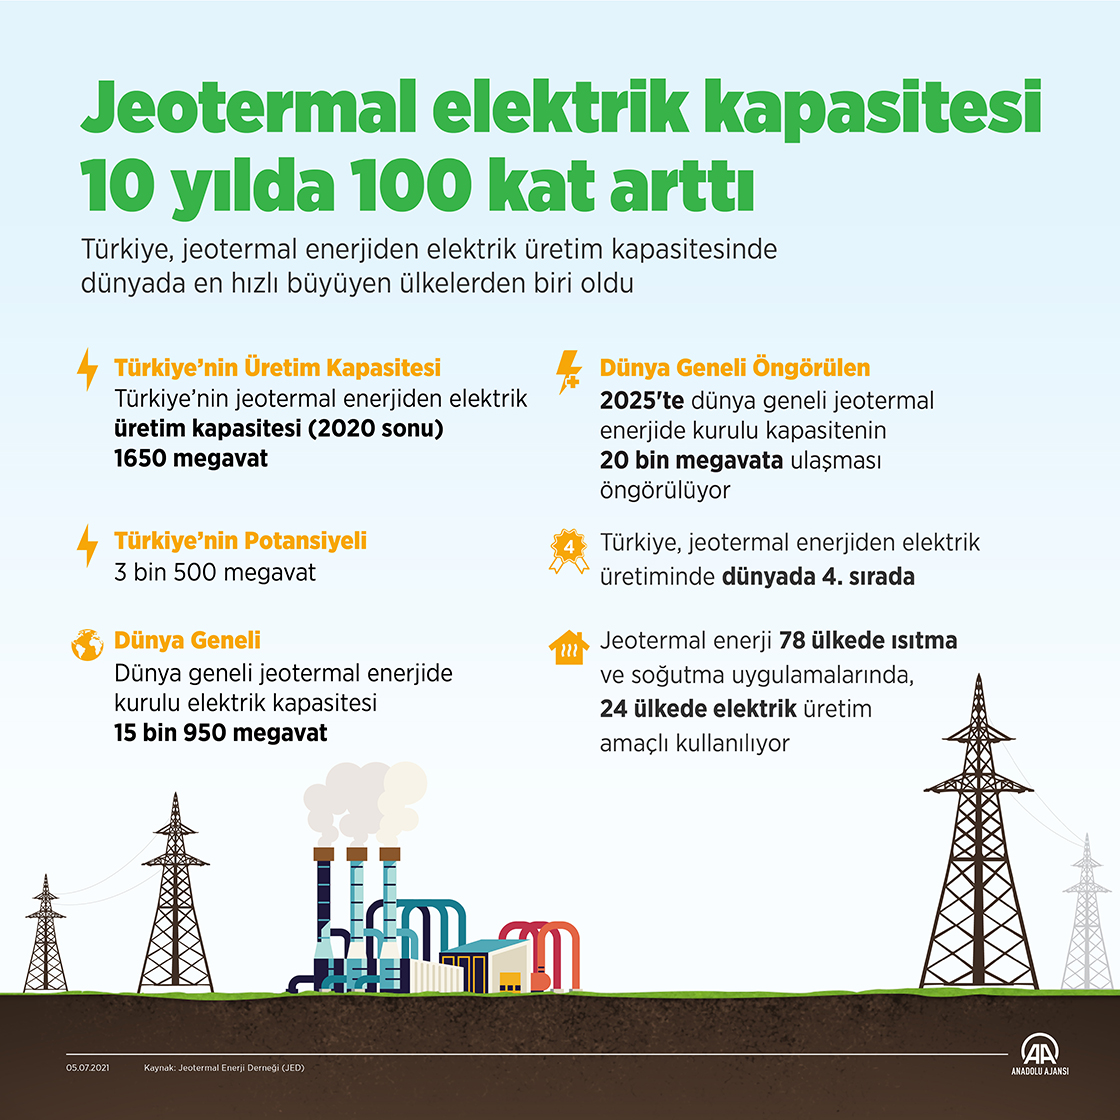 Jeotermal elektrik kapasitesi 10 yılda 100 kat arttı